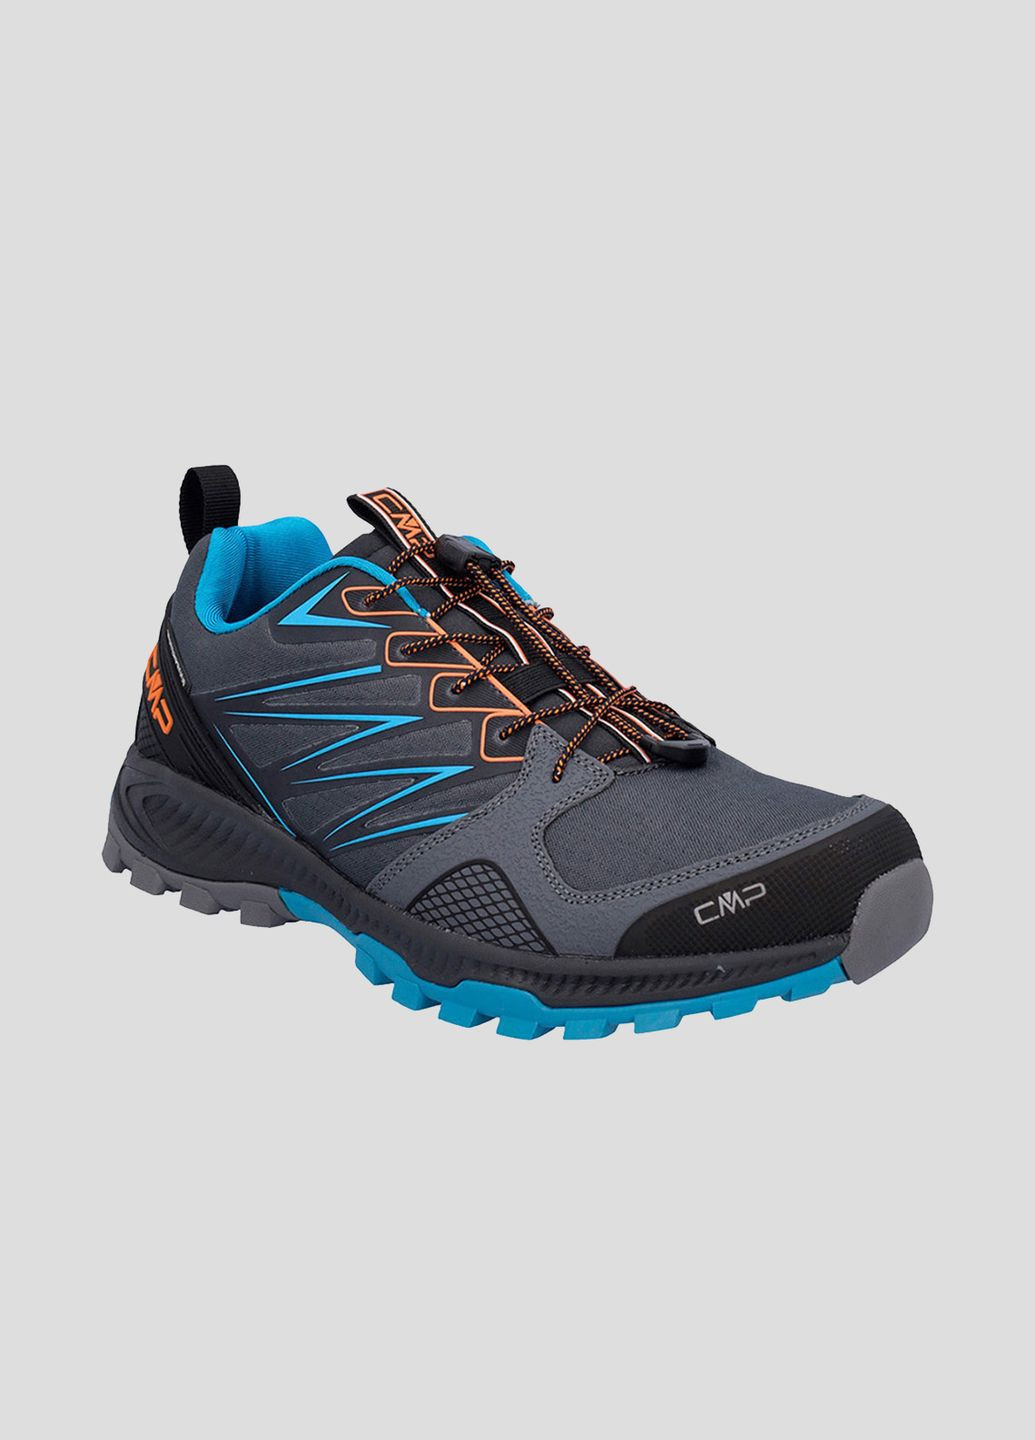 Серые демисезонные треккинковые кроссовки atik wp trail running shoes CMP